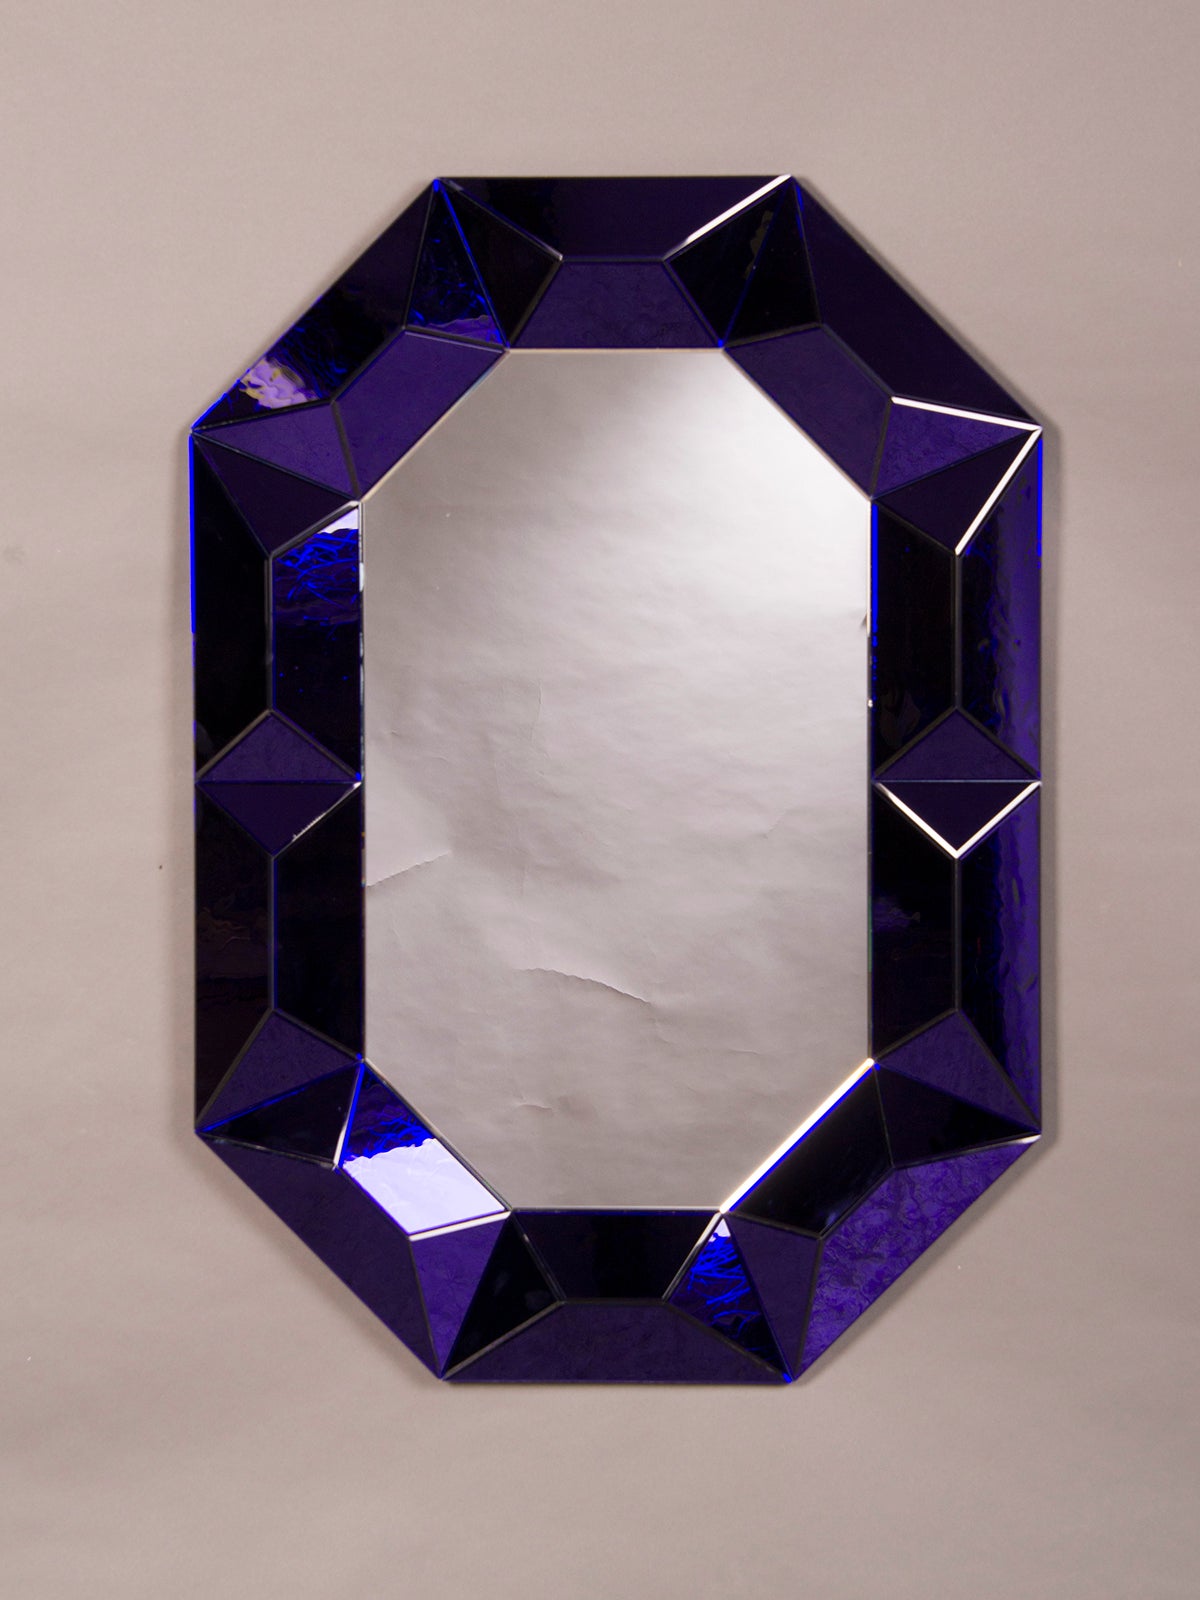 Raised Geometric Lucite Octagonal Mirror of Cobalt Blue, Italy c.1970